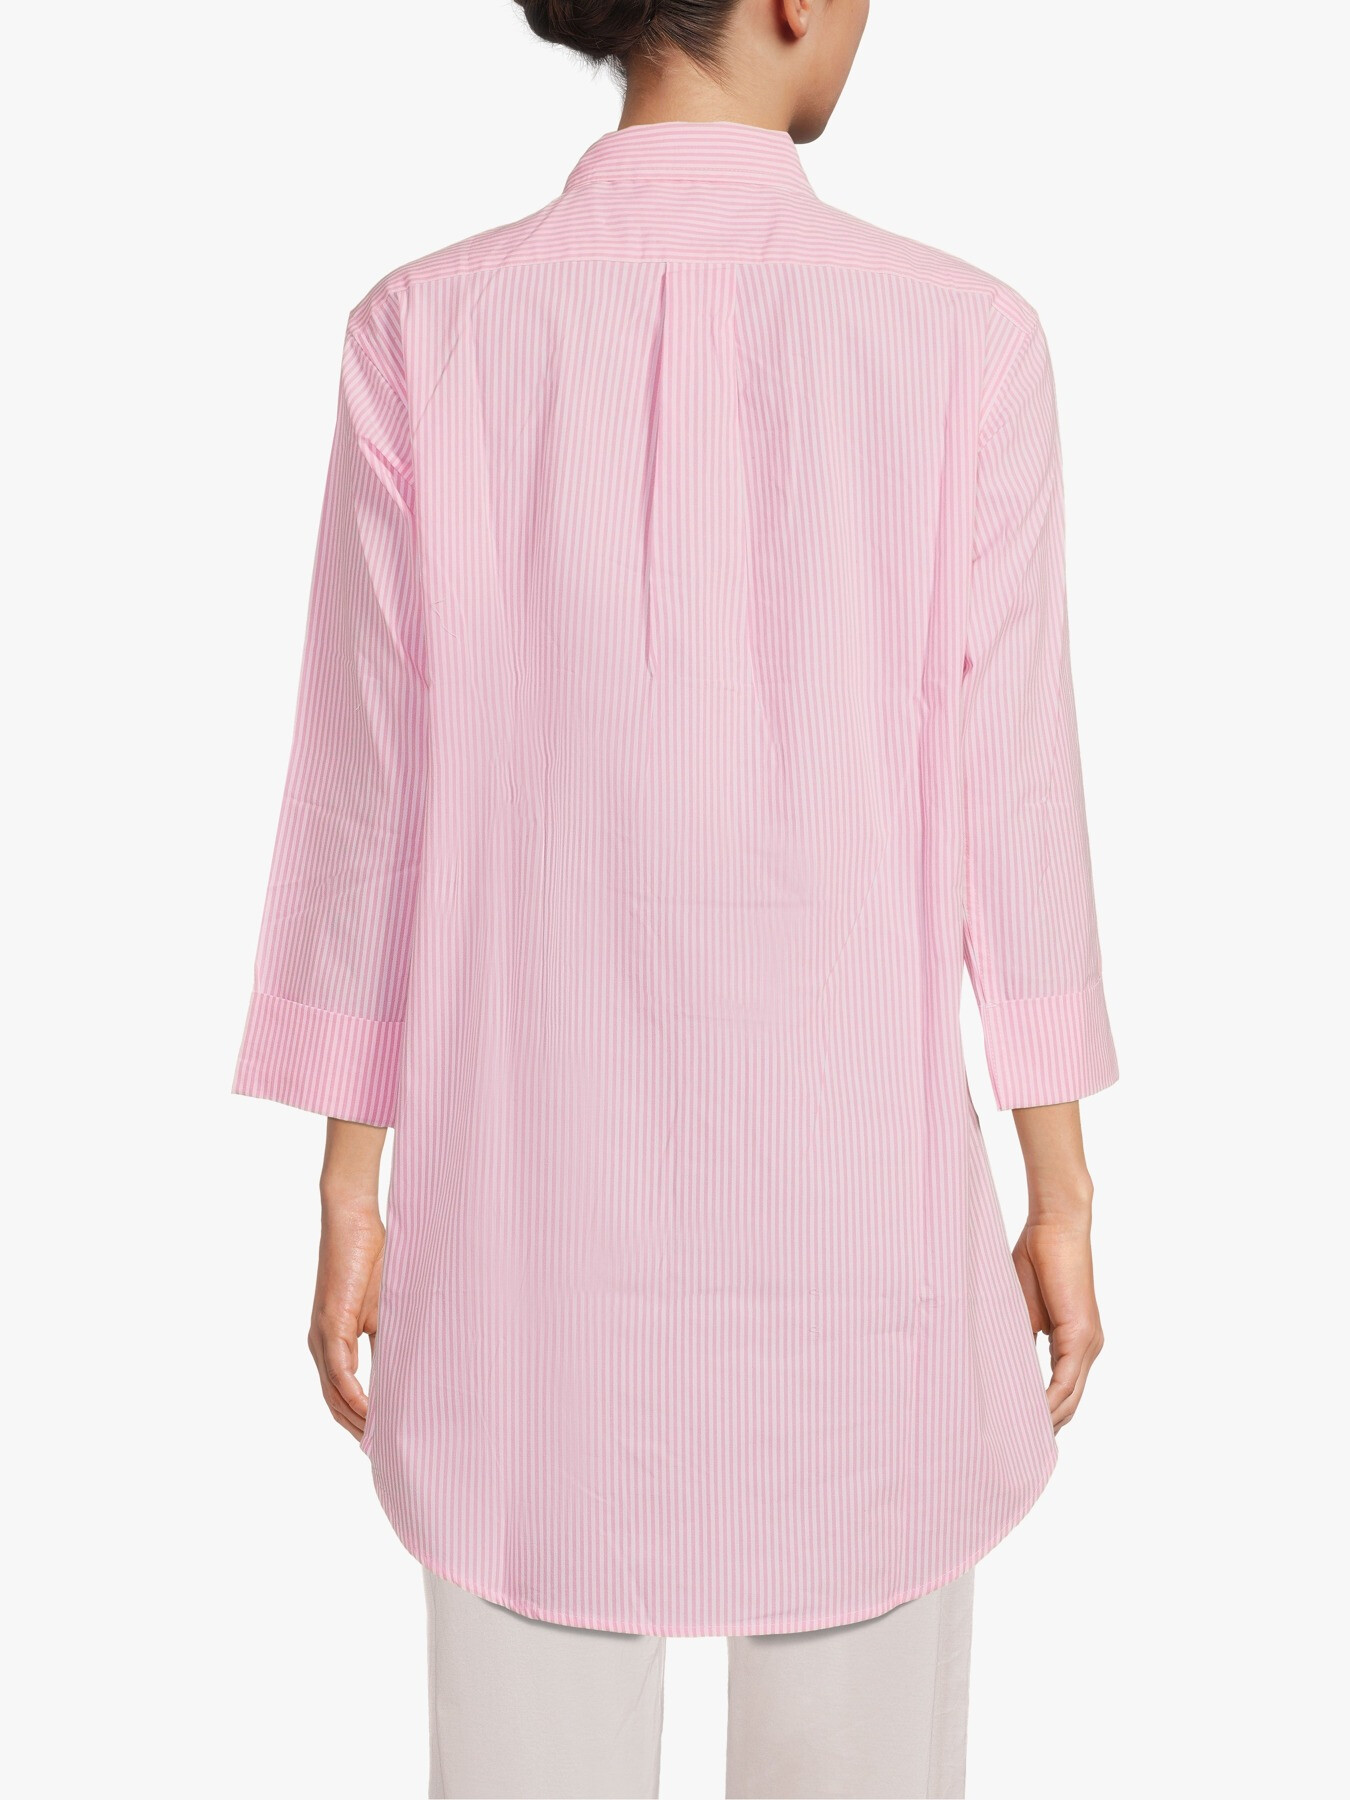 Lauren by Ralph Lauren Heritage Essential Sleepshirt | Nightdresses ...